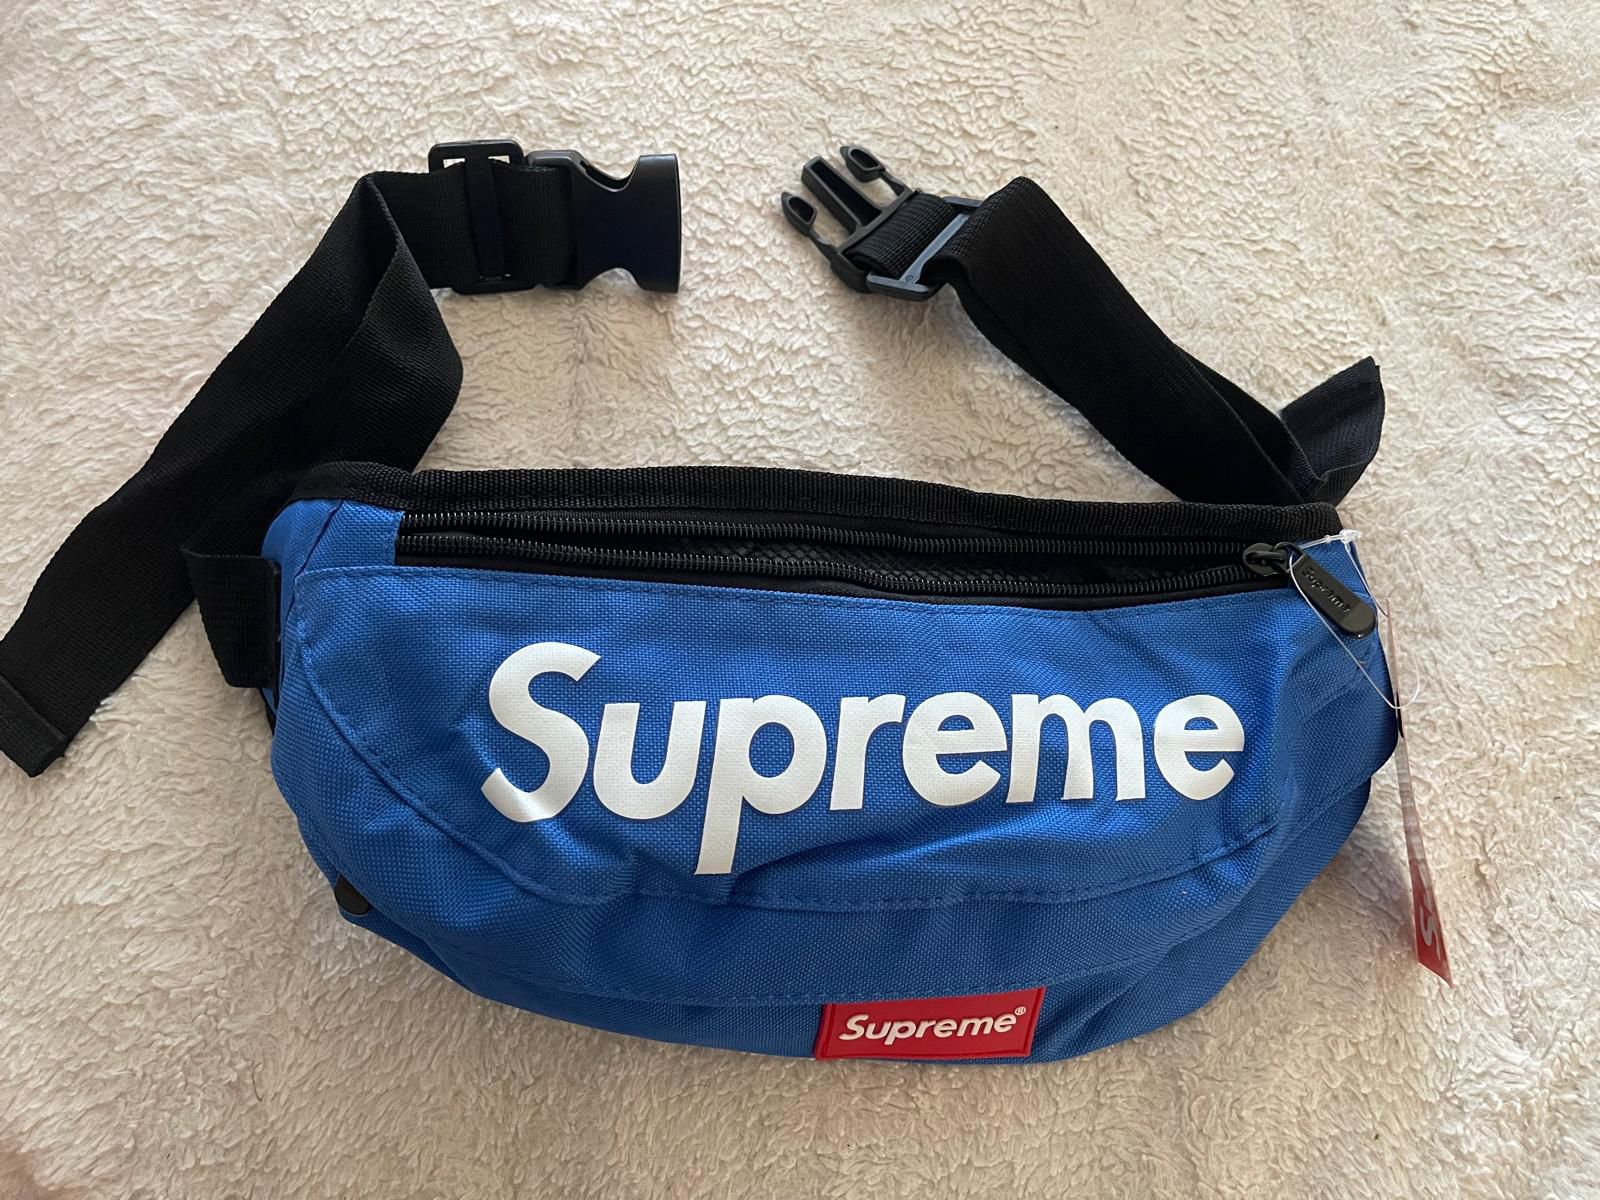 Supreme funny Bag 